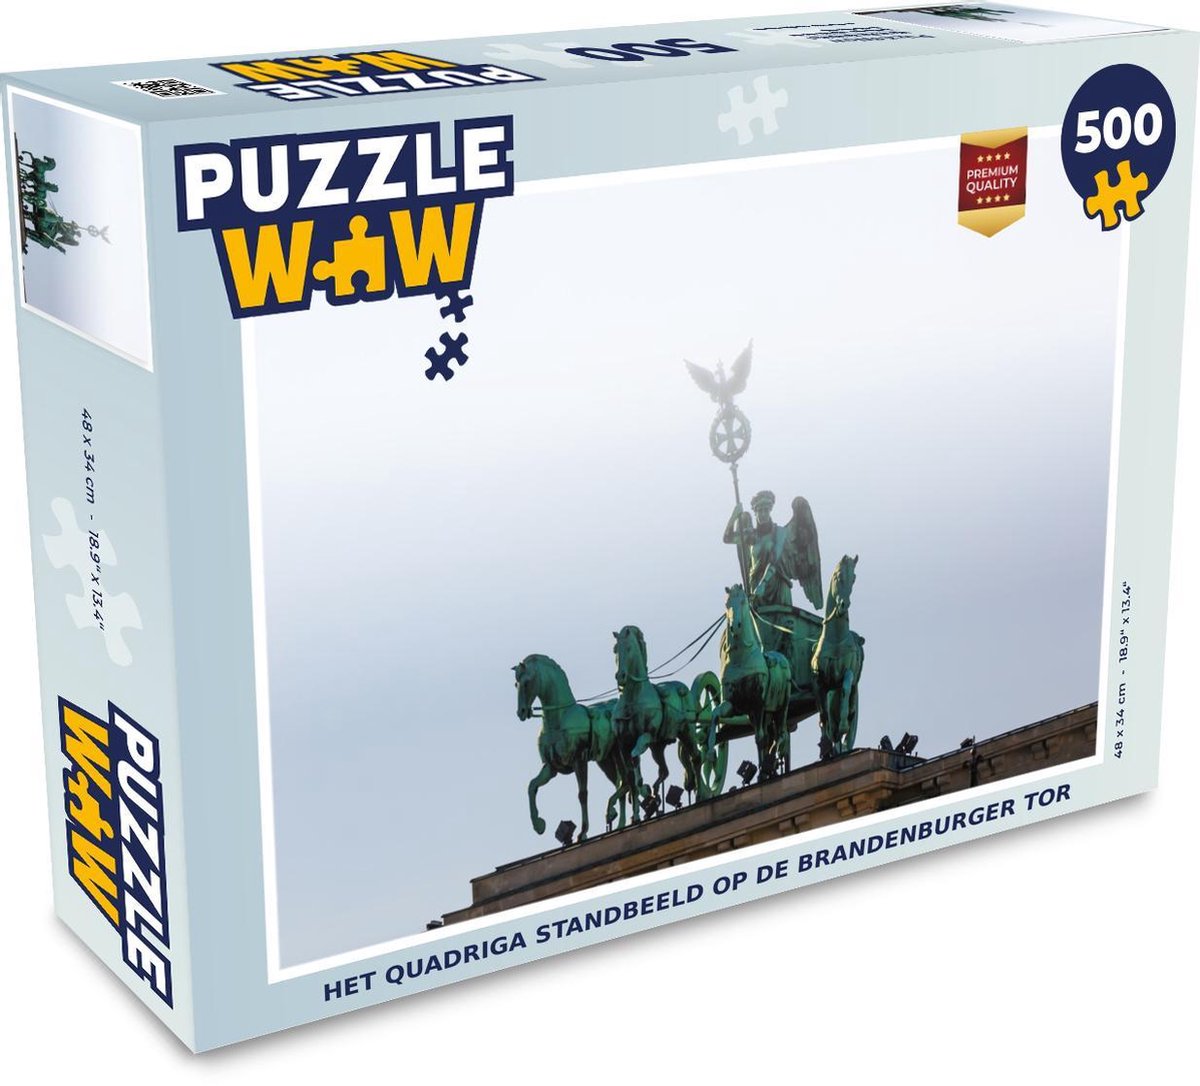 Afbeelding van product Puzzel 500 stukjes Brandenburger Tor - Het Quadriga standbeeld op de Brandenburger Tor puzzel 500 stukjes - PuzzleWow heeft +100000 puzzels